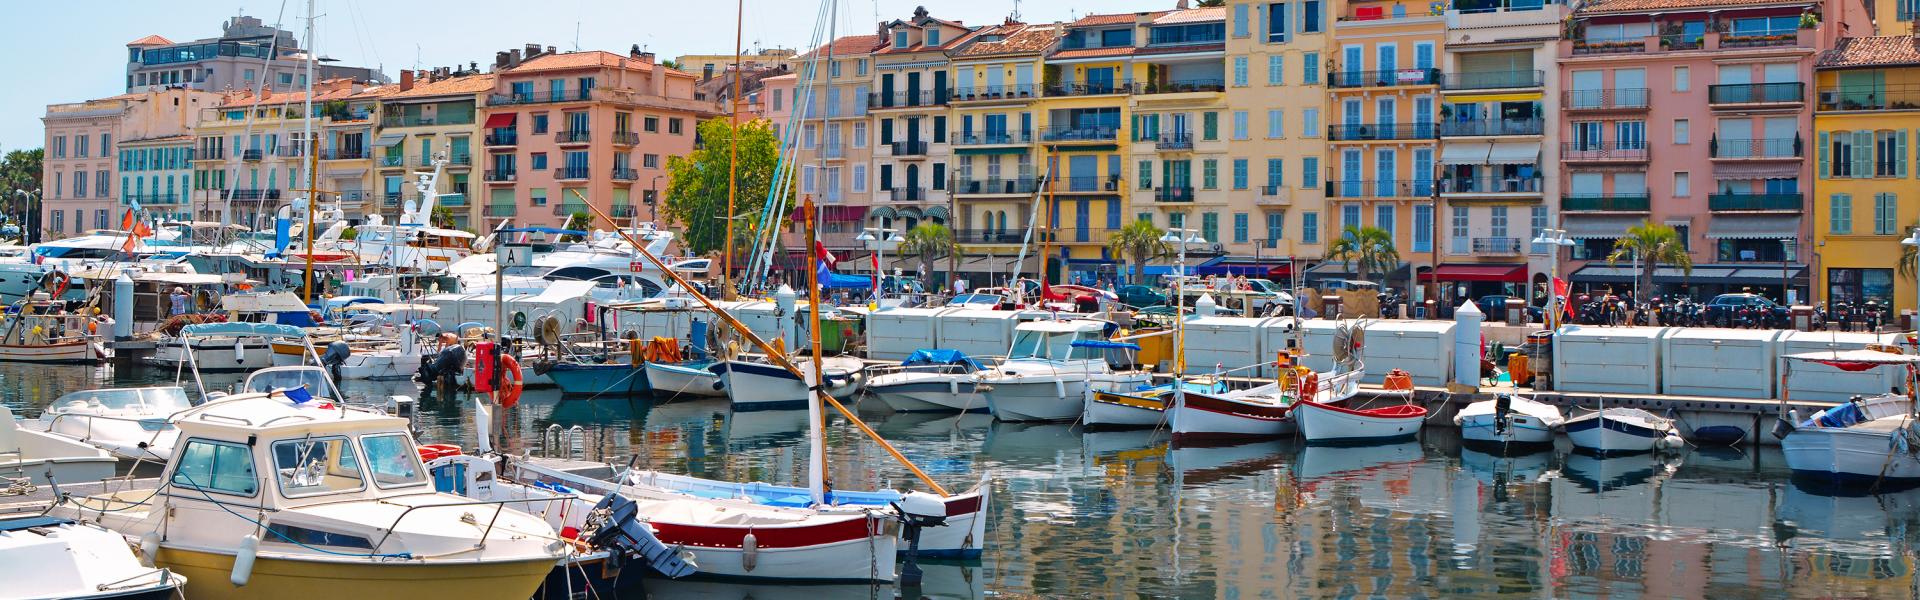 Appartamenti vcanza Cannes - Venite in Costa Azzurra - Casamundo